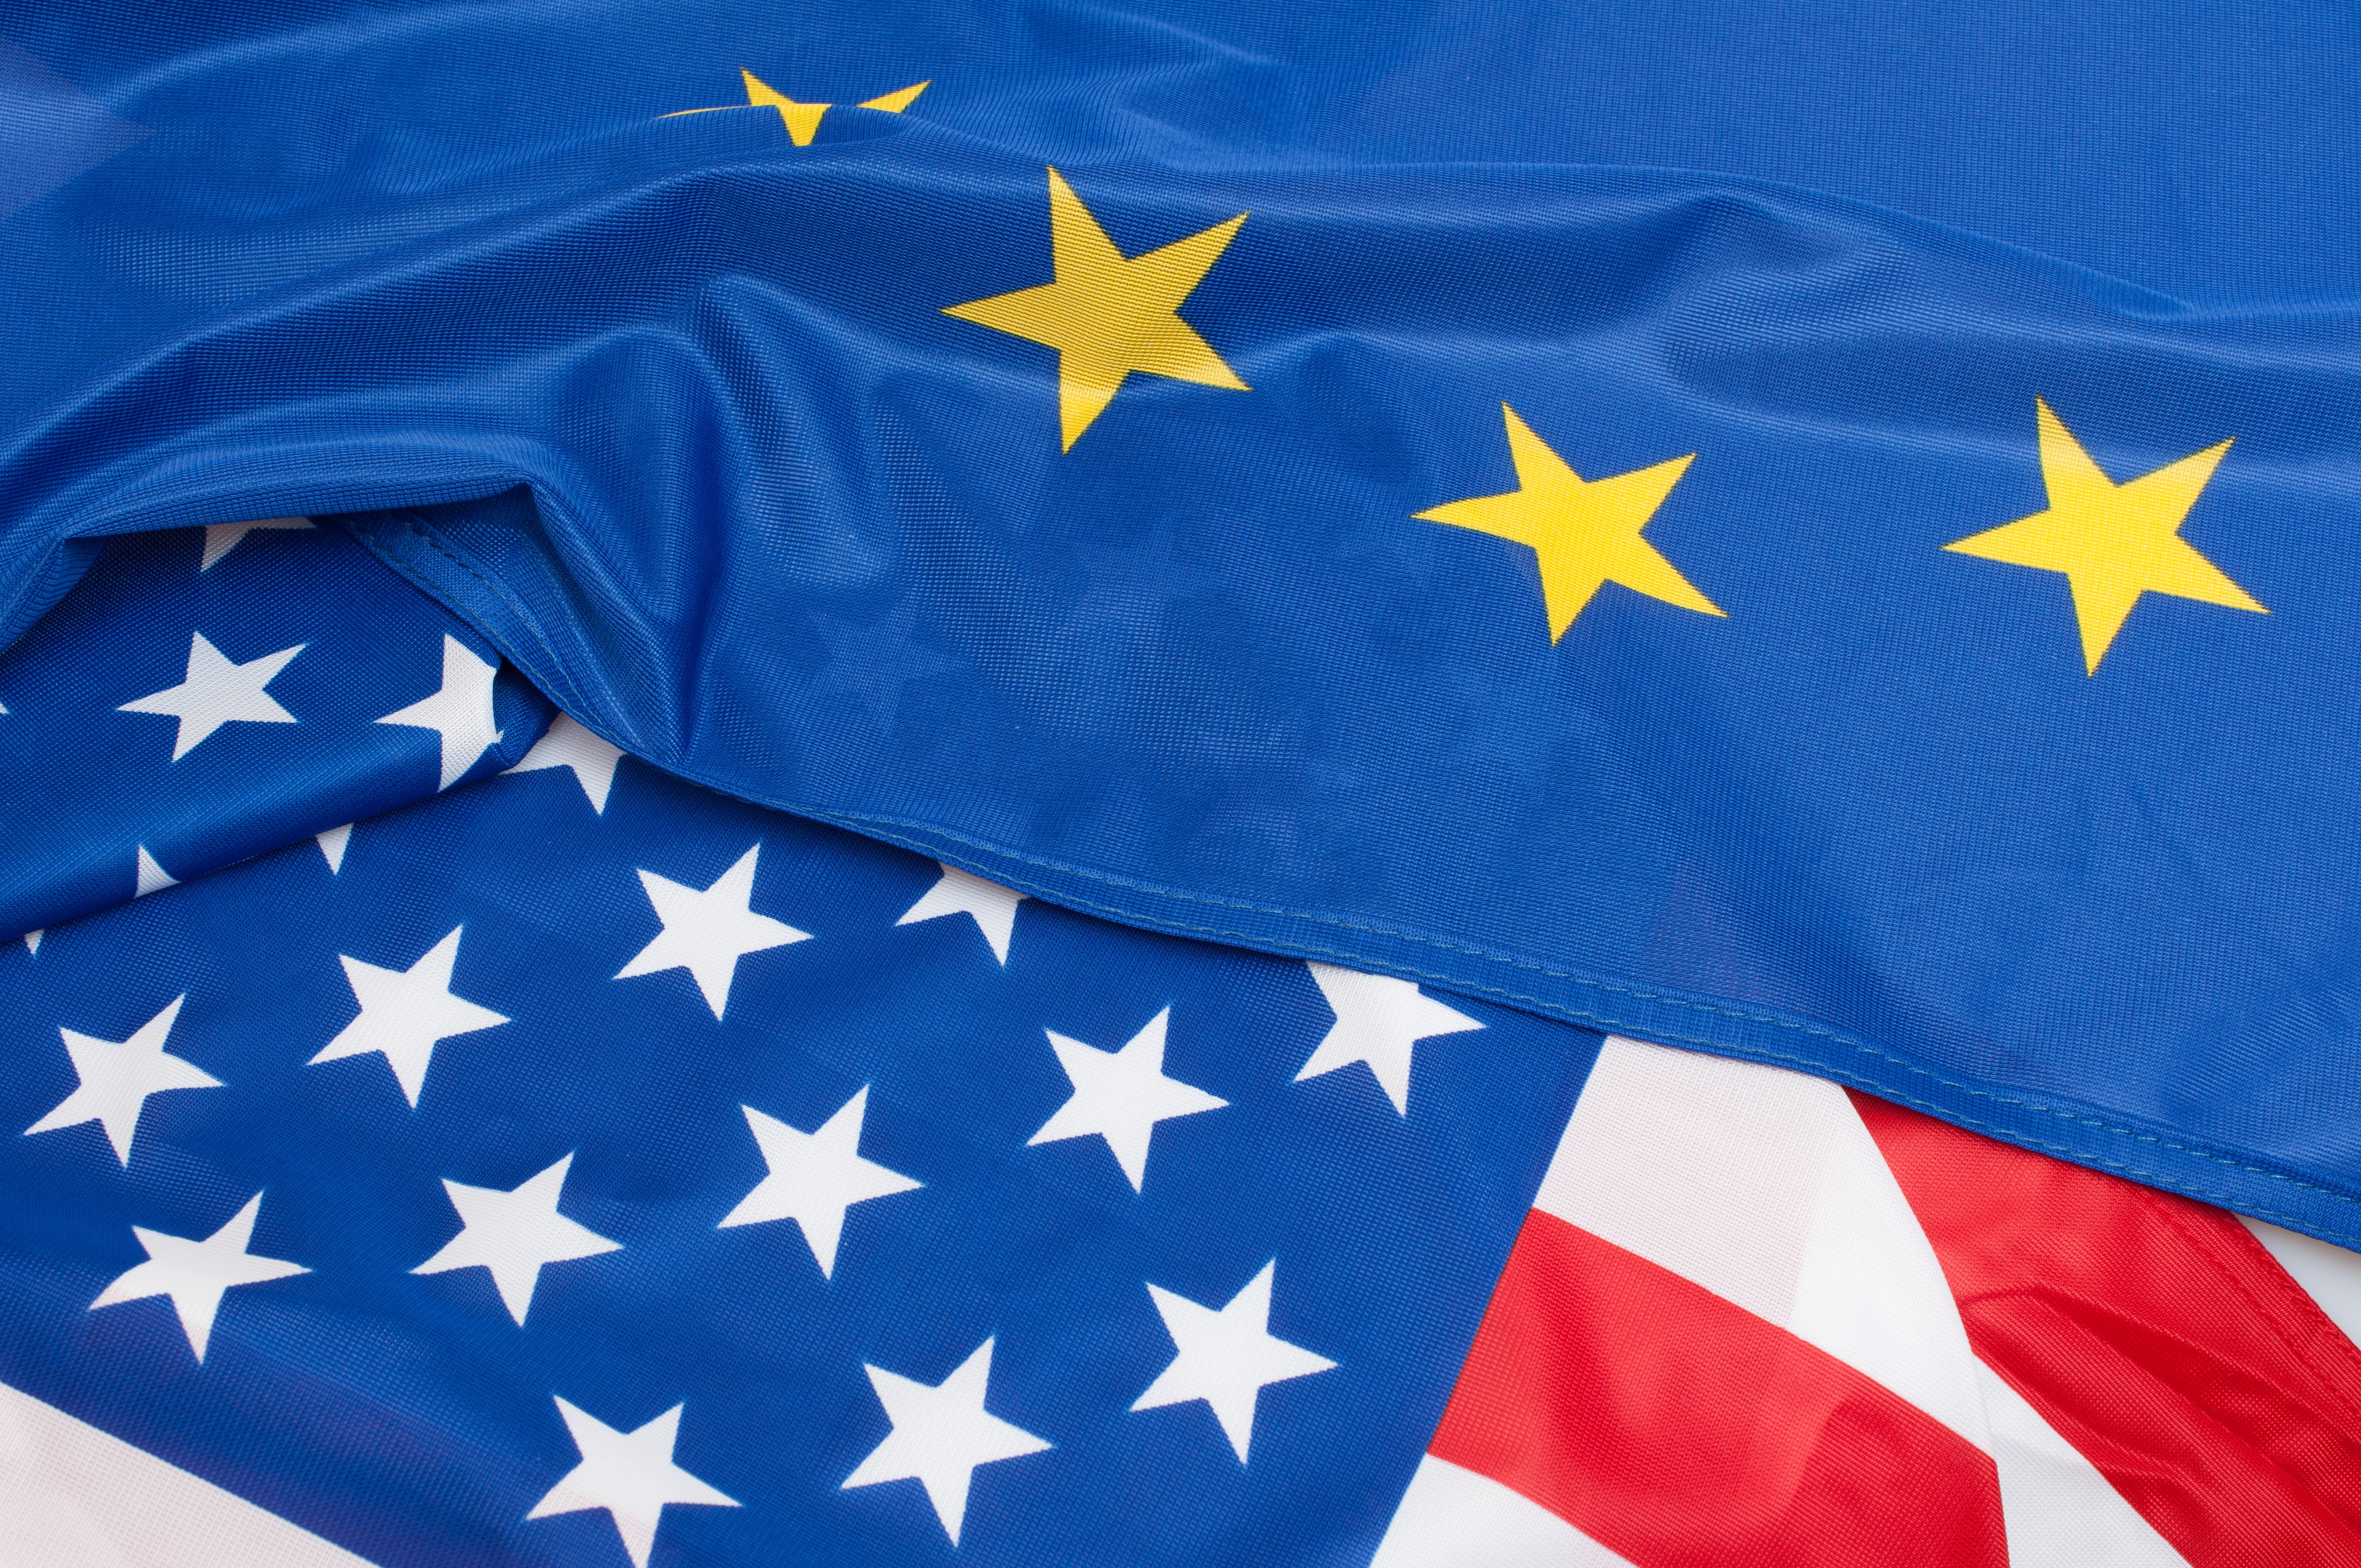 EUROALUE VS USA -TUOTTOERO 2018 SIJOITUSWARRANTTI Sijoitus euroalueen ja USA:n osakemarkkinoiden tuottoeroon Korkea tuottomahdollisuus ja korkea riski Sijoitus ei ole pääomaturvattu Sijoitusaika noin